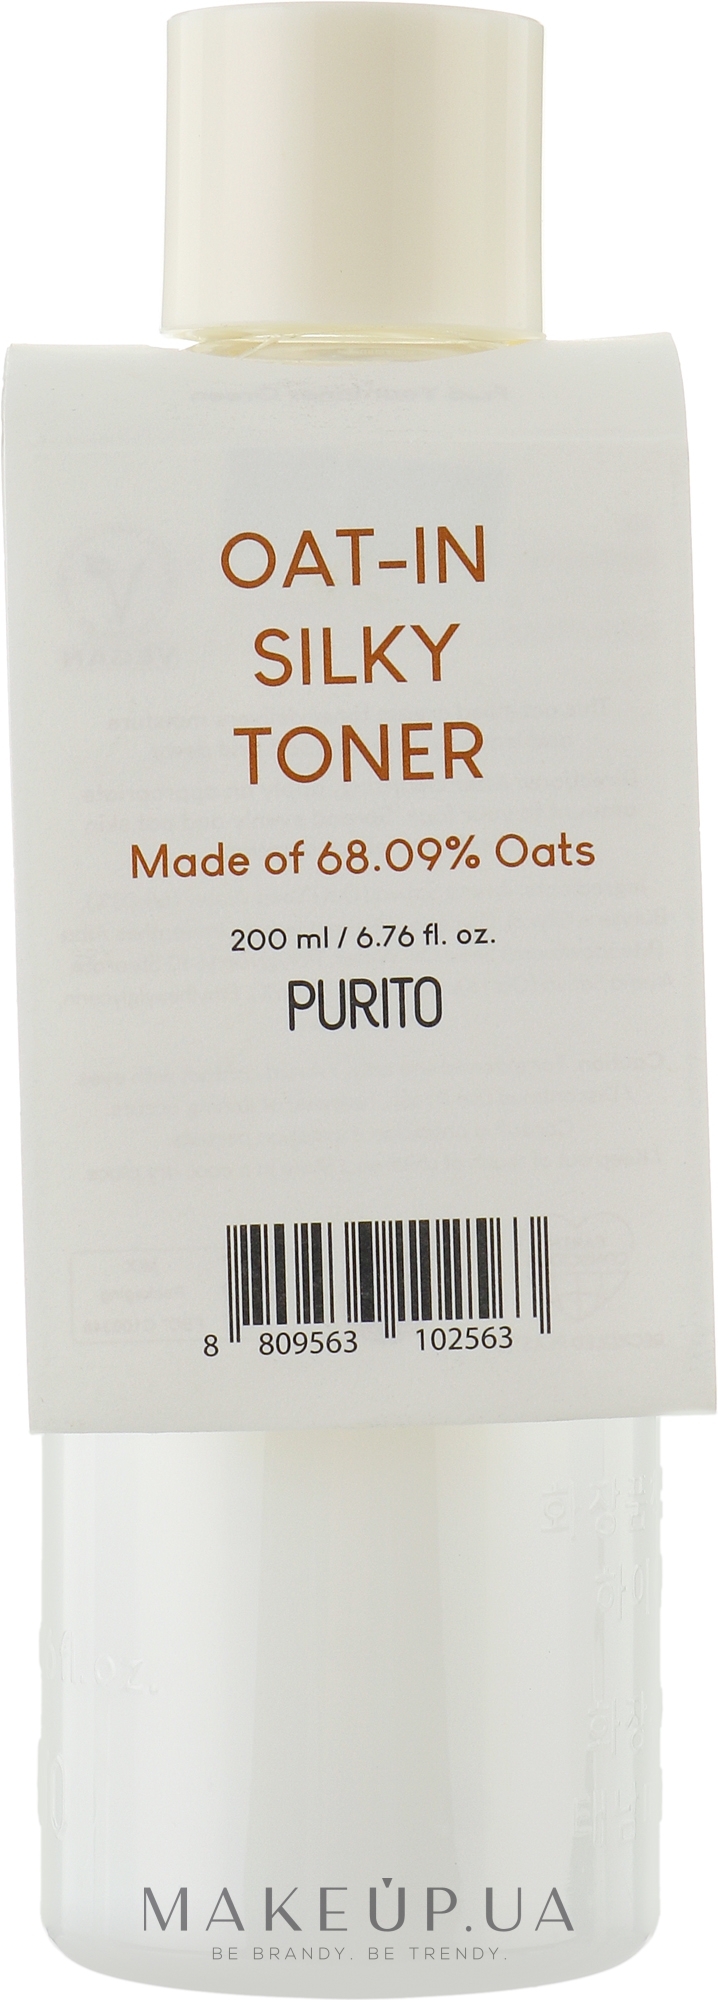 Успокаивающий тонер на основе семян овса - Purito Oat-in Silky Toner — фото 200ml